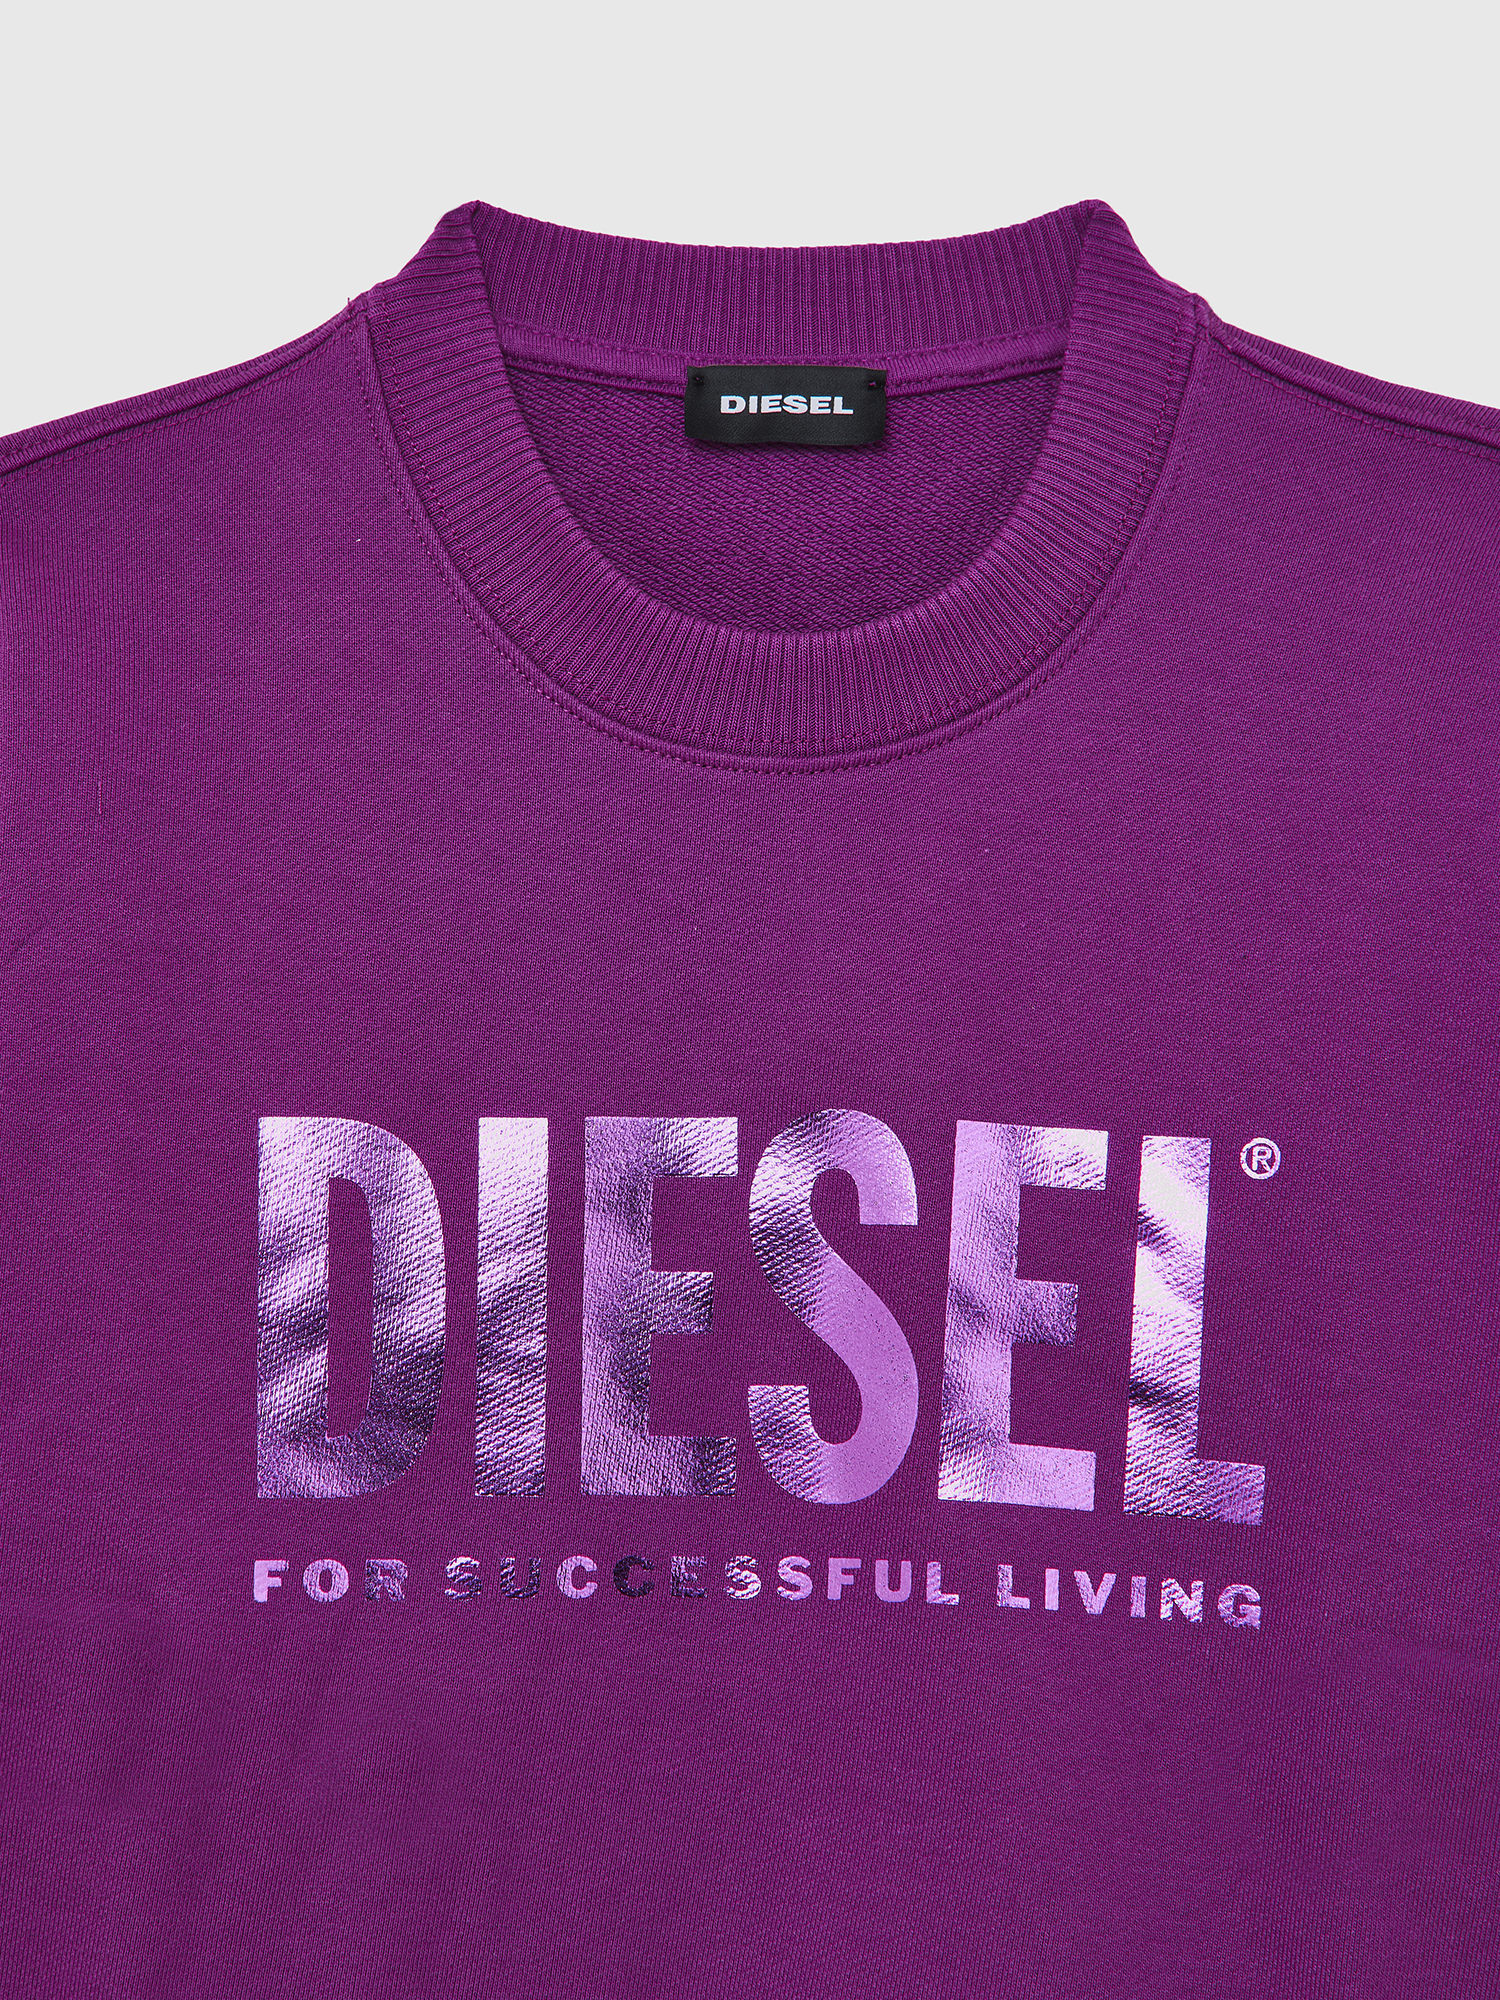 Diesel - SANGWX, Violet - Image 3